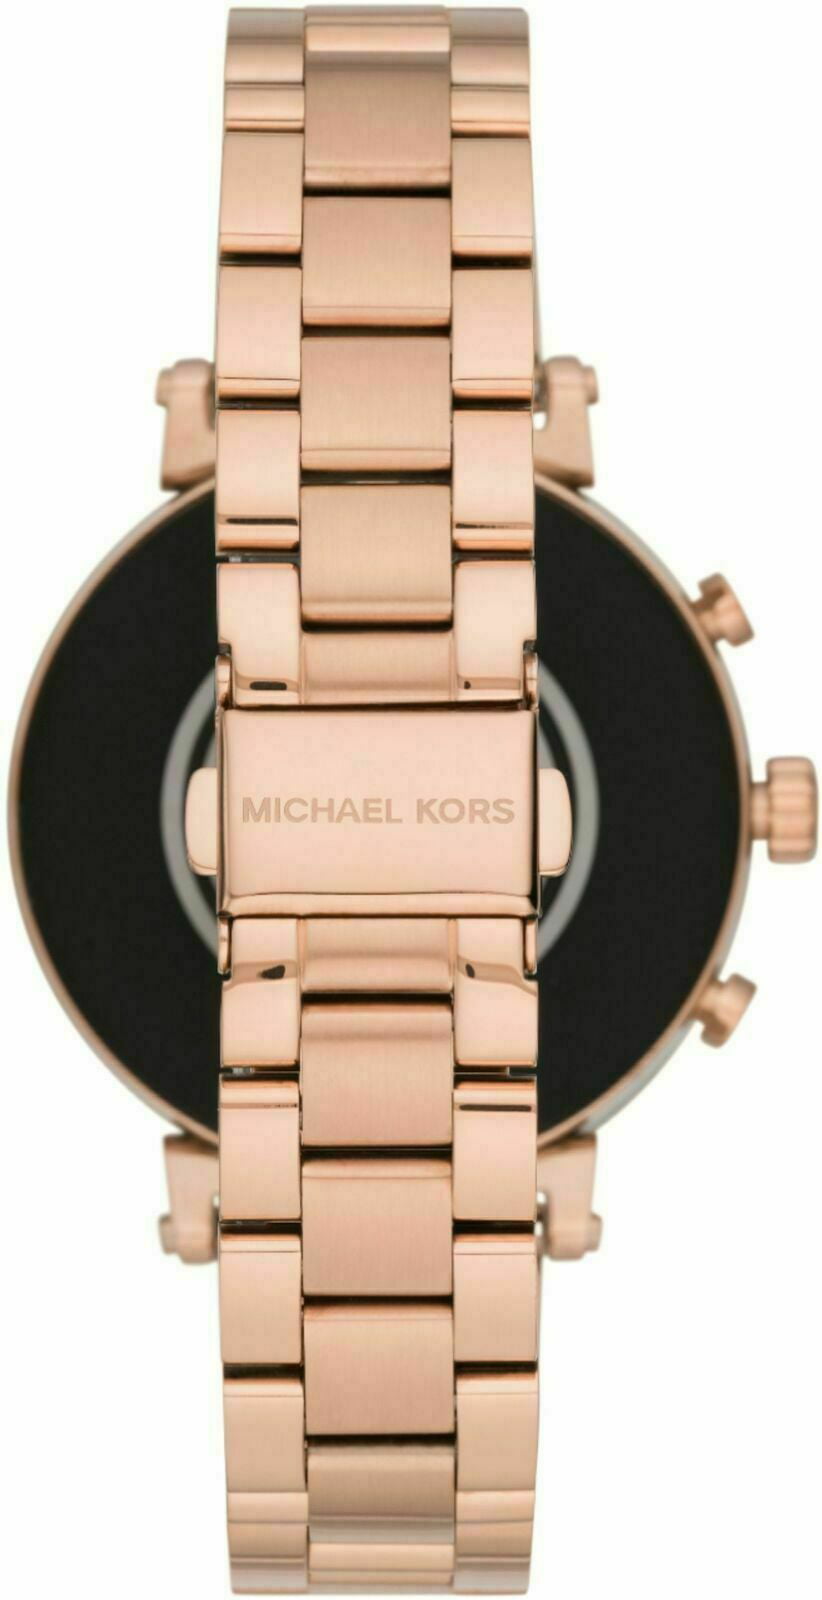 voldtage Robust Ondartet Michael Kors MKT5063 Slim Sofie Rose Gold Smart Watch - Walmart.com